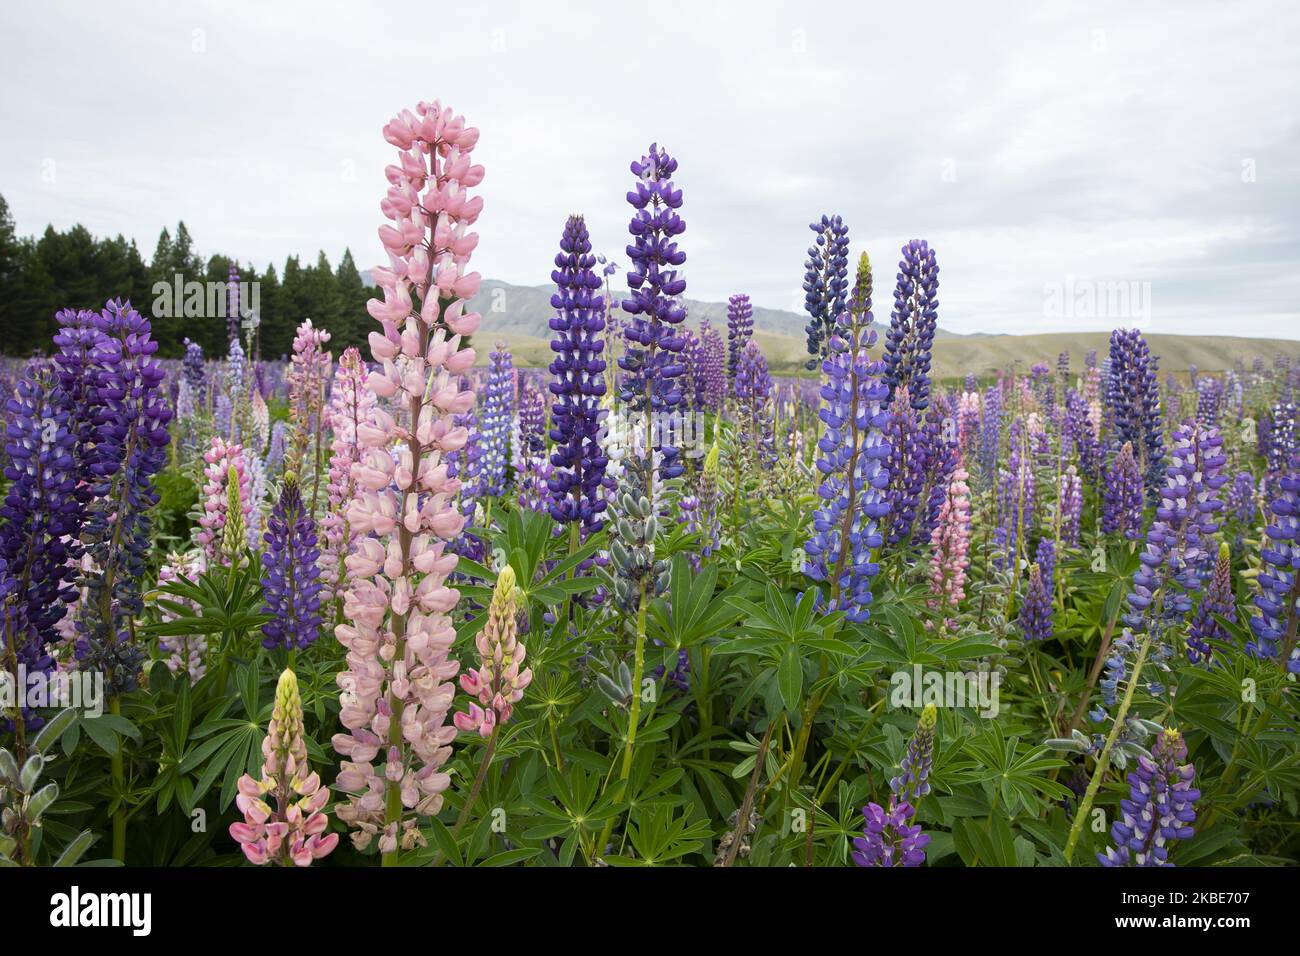 Bunte Lupinenblumen in Tekapo,Â Mackenzie Country,Â auf der zentralen Südinsel von New ZealandÂ am 10. Januar 2020.Â Tekapo ist eine der beliebtesten Touristenattraktionen Neuseelands. Jeden November beginnen riesige, farbenfrohe Felder mit Lupinenblumen entlang der Seeufer, Bäche, Kanäle und Autobahnen der Mackenzie Region in Neuseeland aufzutauchen. Lupinen sind jedoch eine nicht-einheimische Blumenart und verursachen in Neuseeland eine Reihe von ofÂ Problemen, da sie sich schnell ausbreiten und einheimische Flora und Fauna aus ihren Lebensräumen drängen. Â Â (Foto by Sanka Vidanagama/NurPhoto) Stockfoto